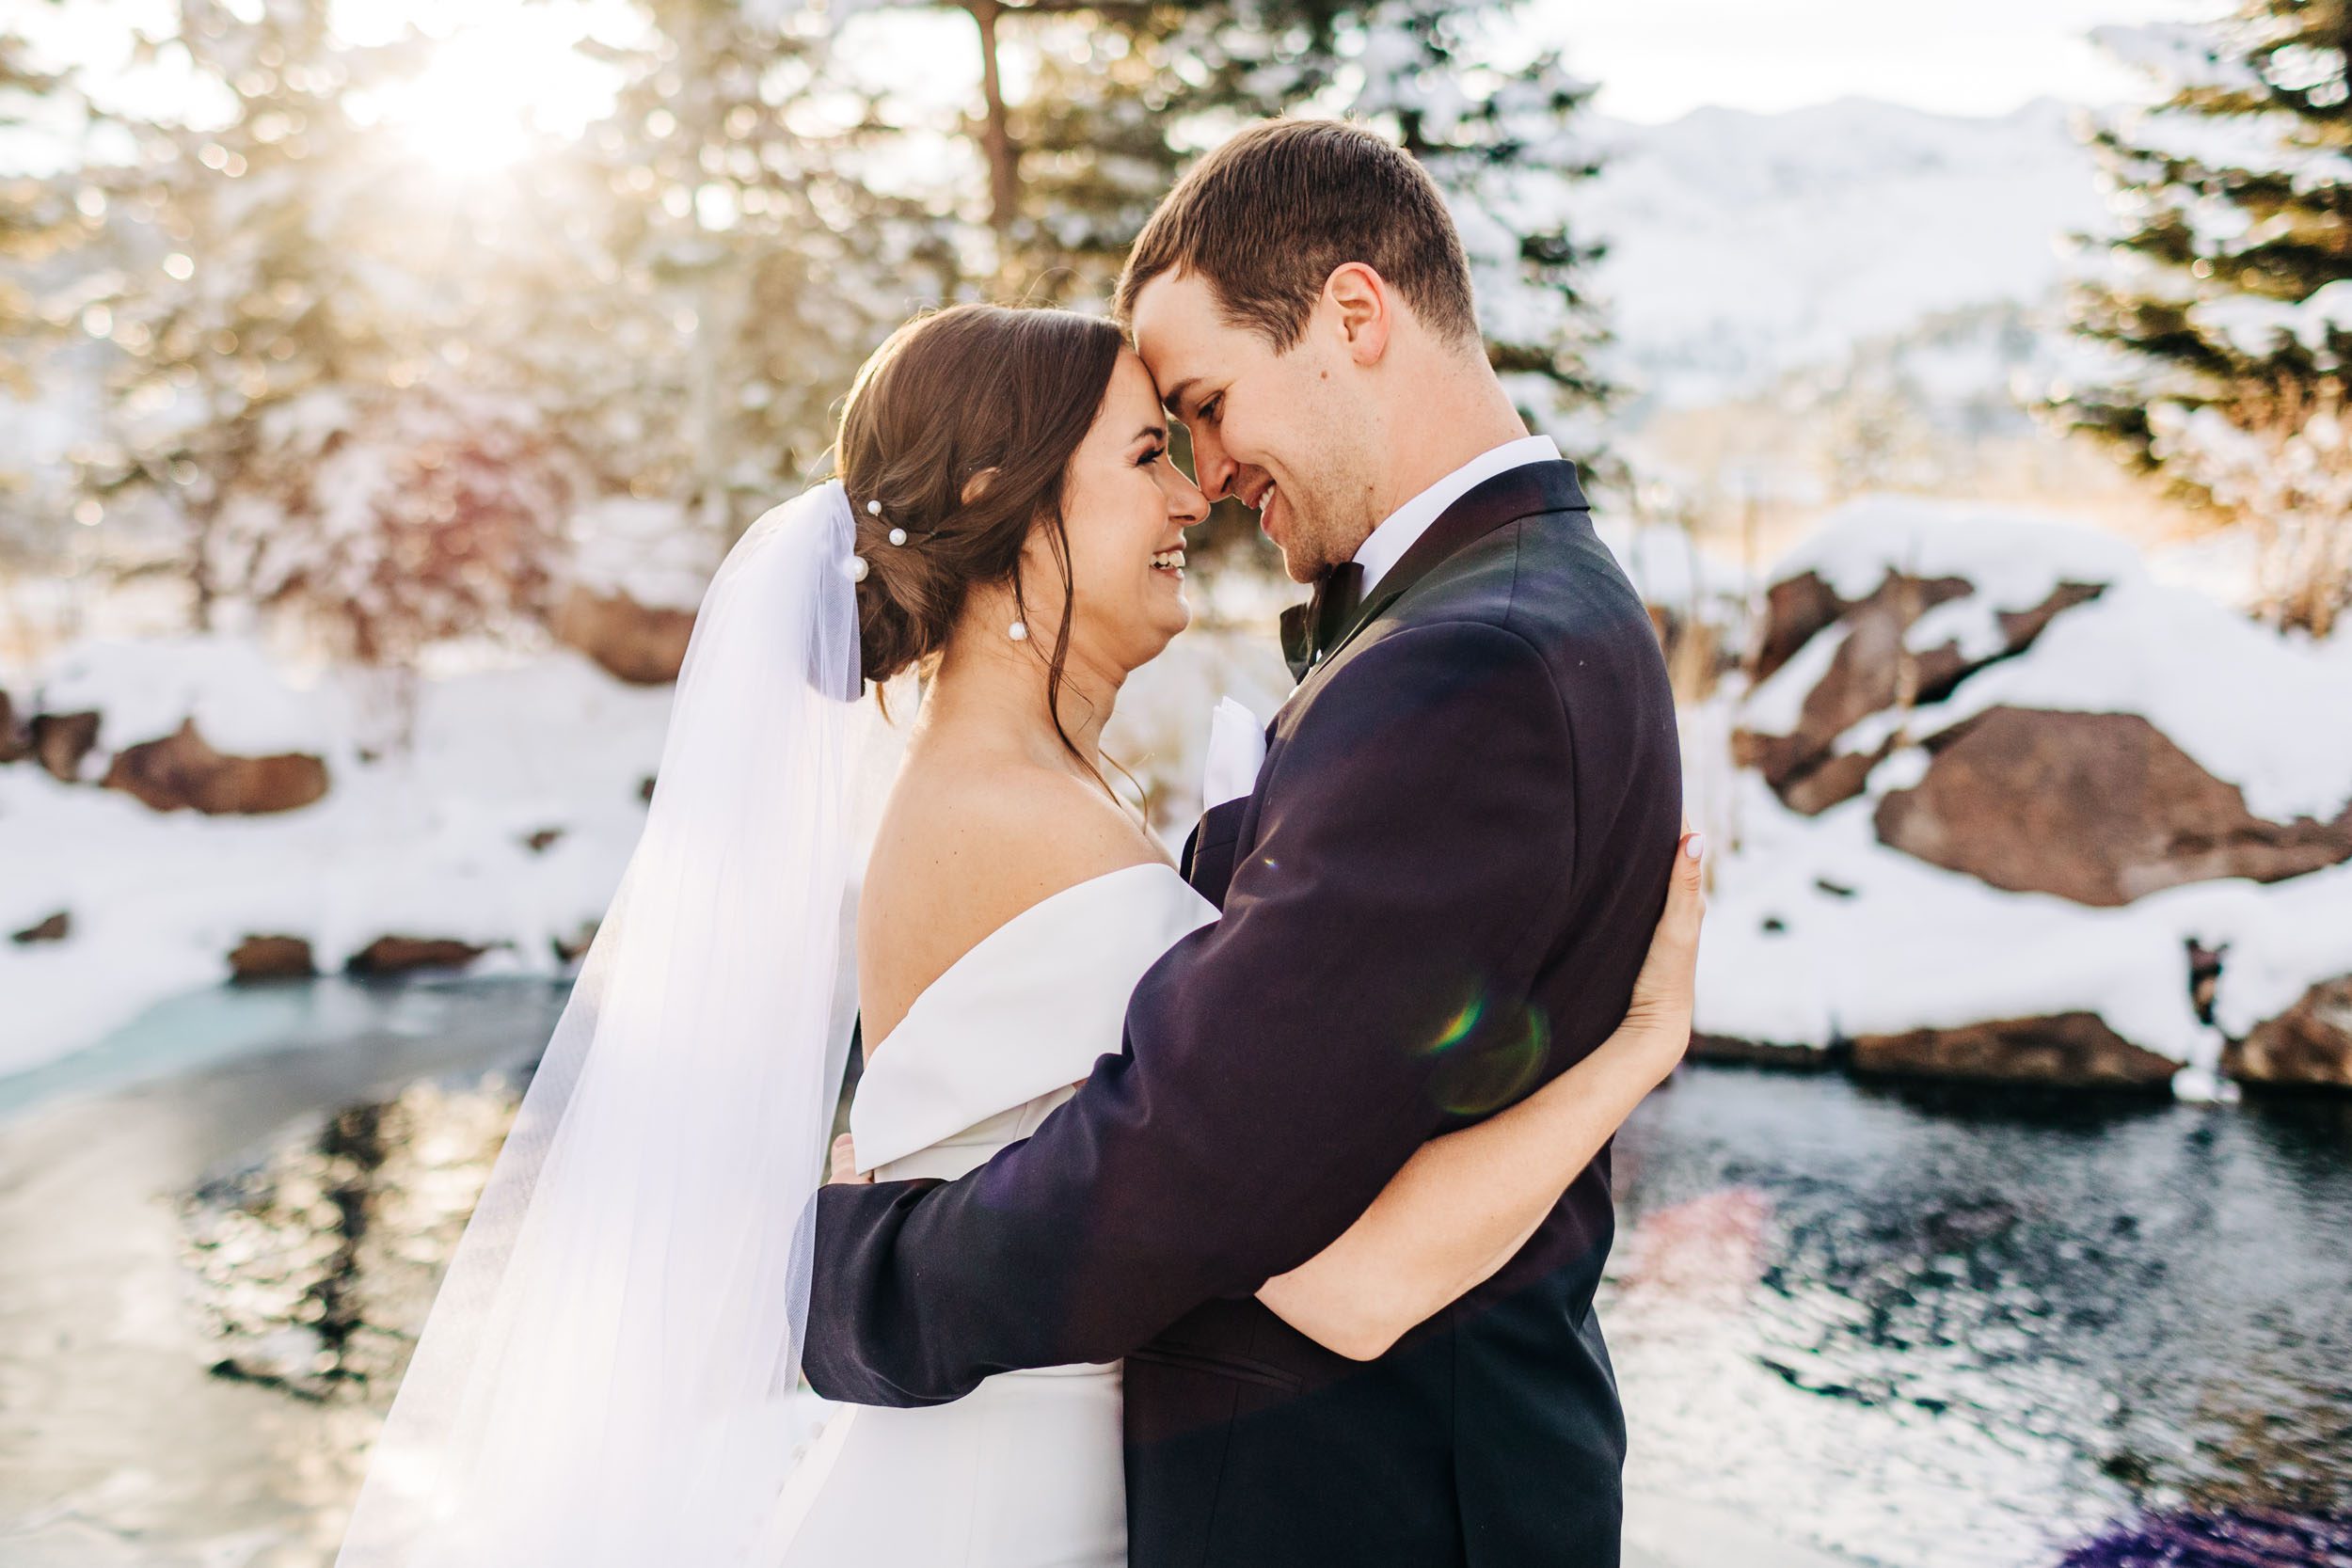 Winter wedding photos at The Greenbriar Inn in Boulder Colorado